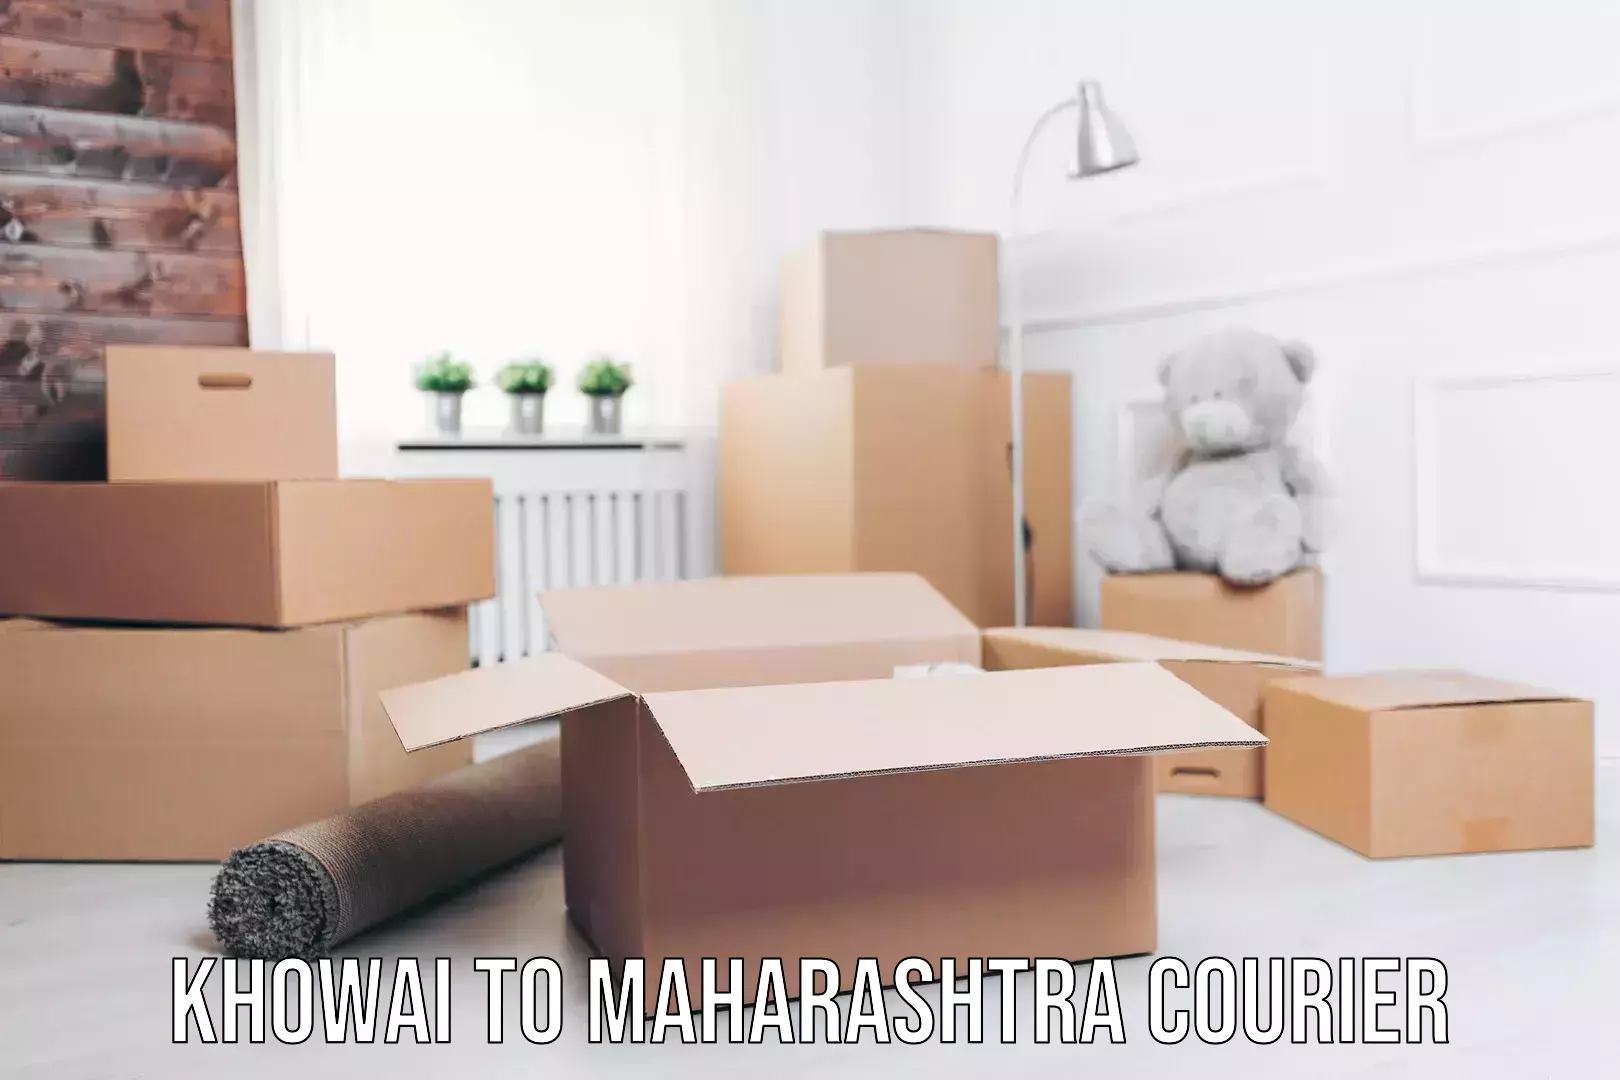 Automated parcel services Khowai to Maharashtra